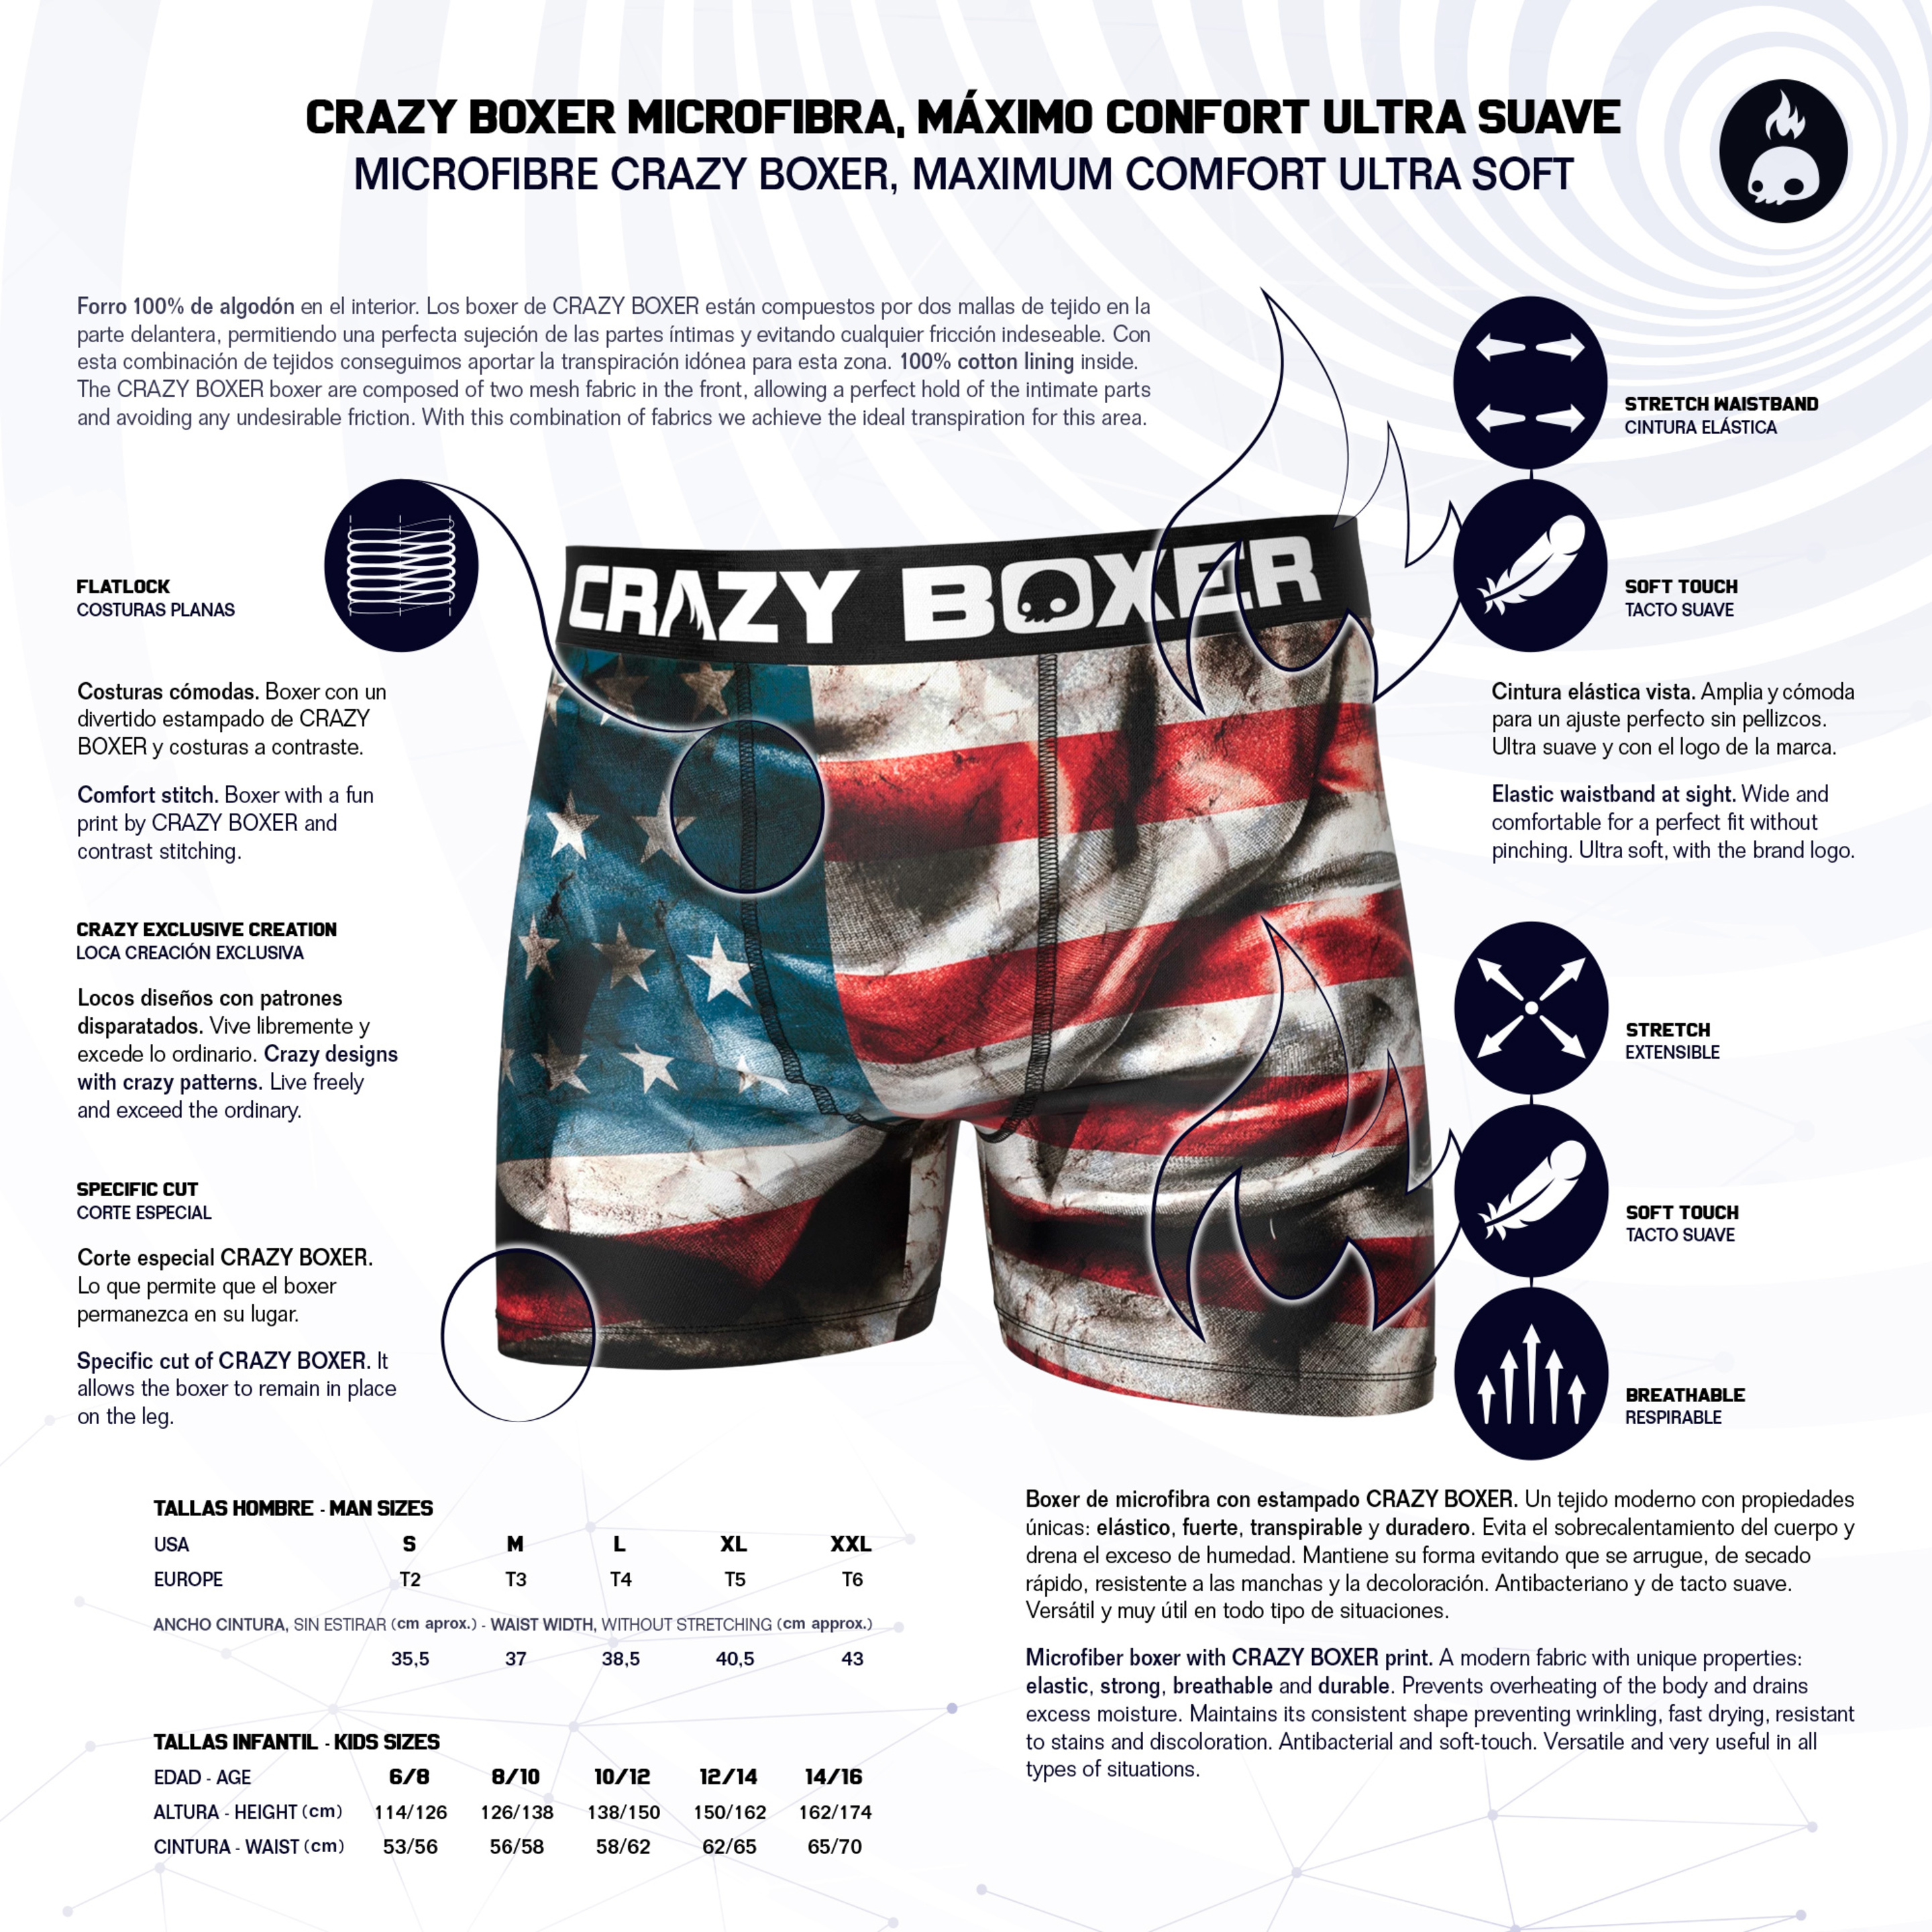 Calzoncillos Bandera Crazy Boxer Usa - Negro - Casual Hombre  MKP